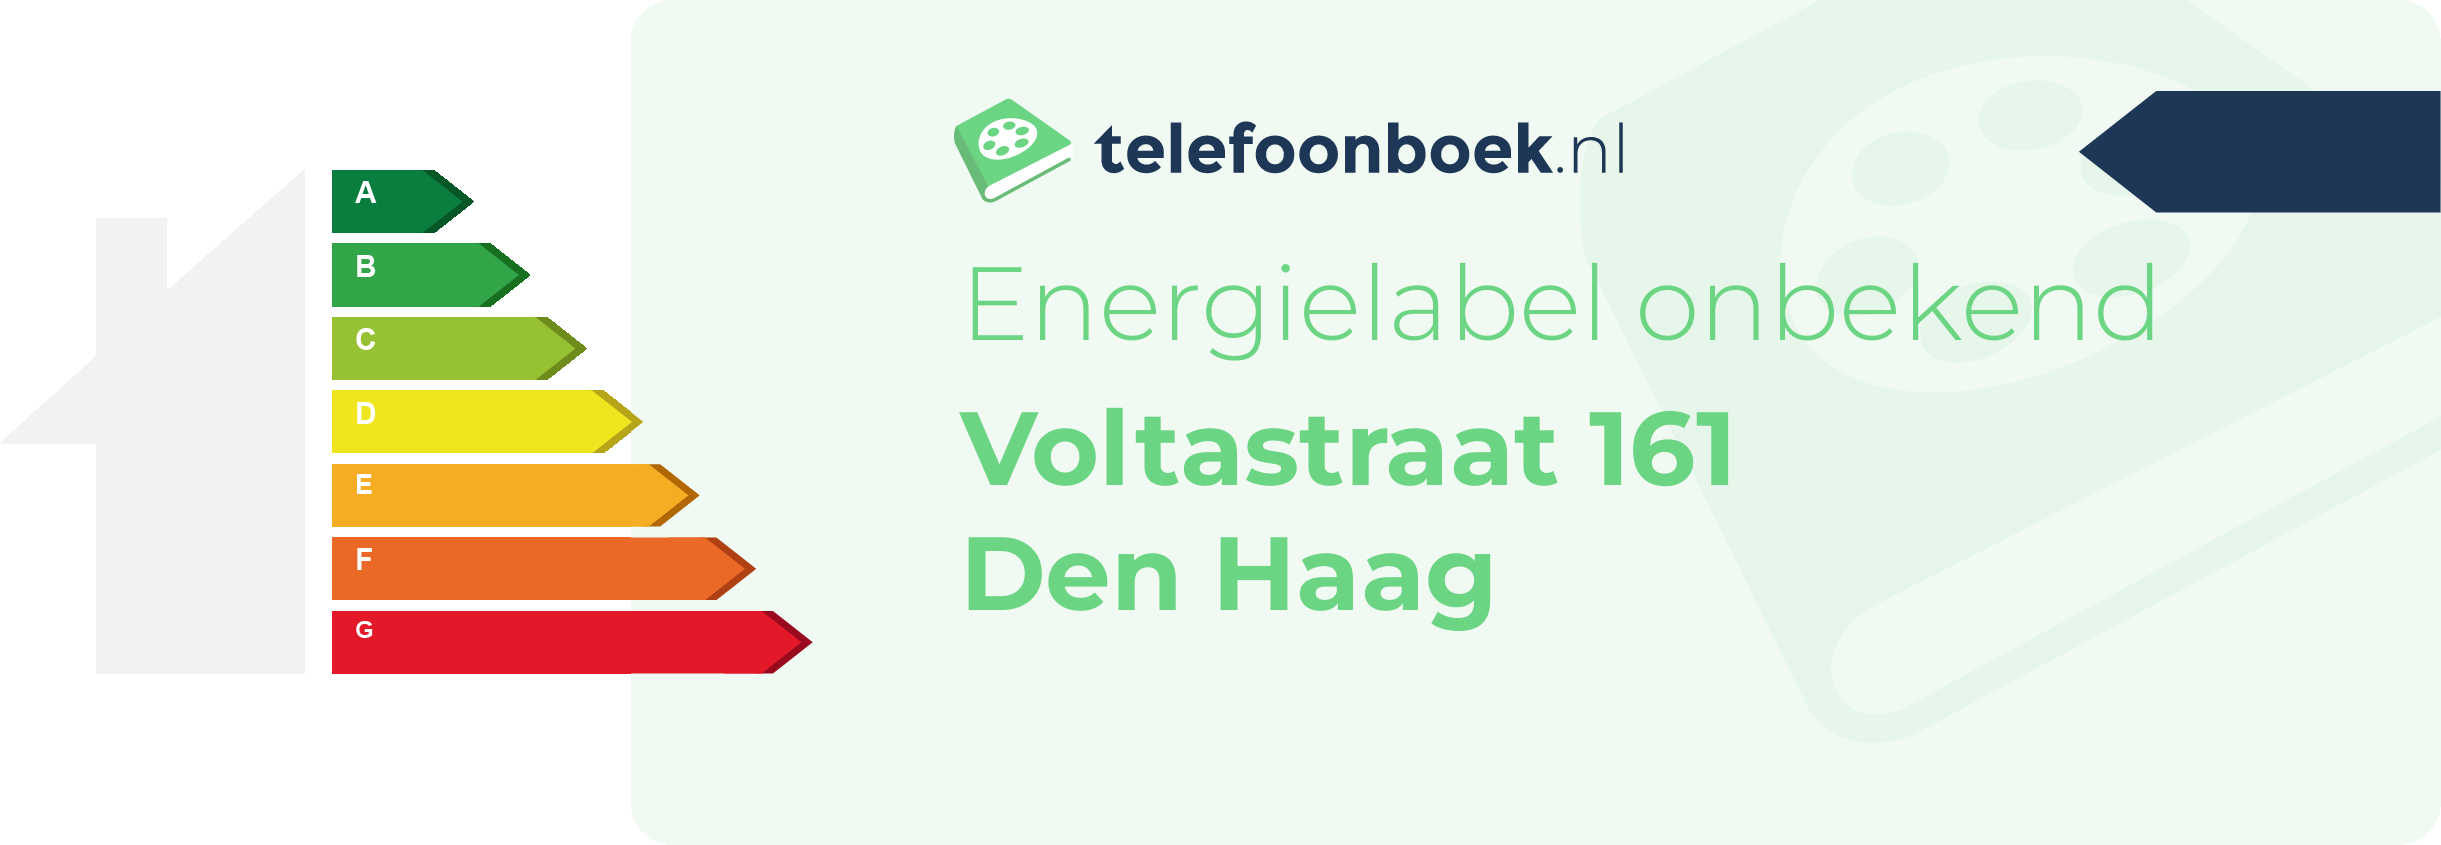 Energielabel Voltastraat 161 Den Haag